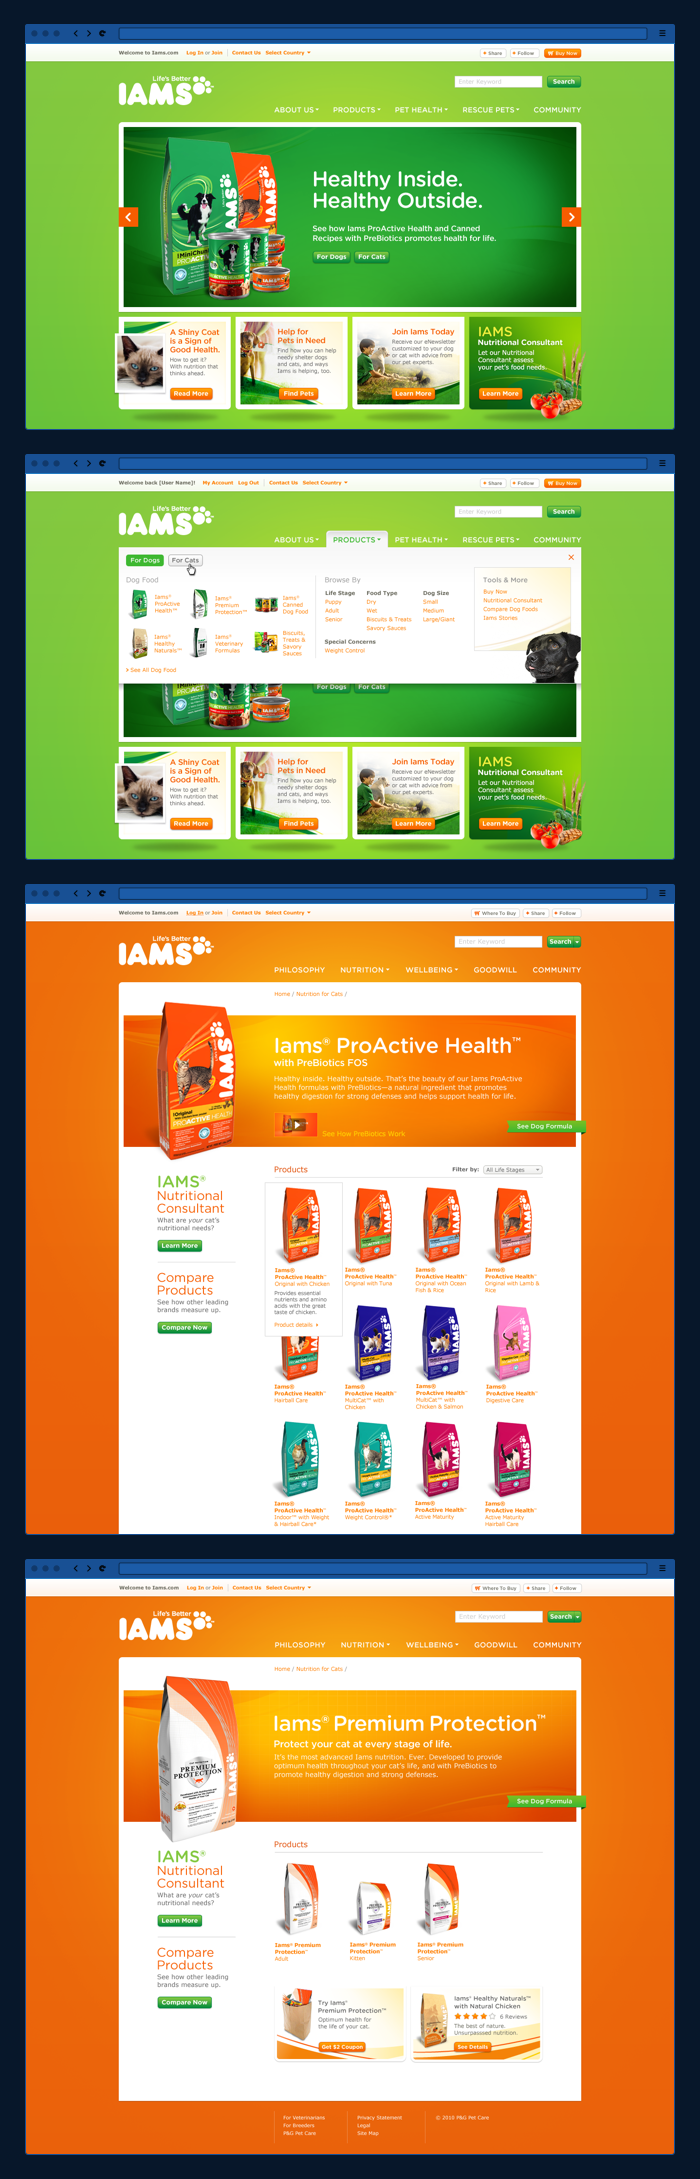 Iams.com redesign